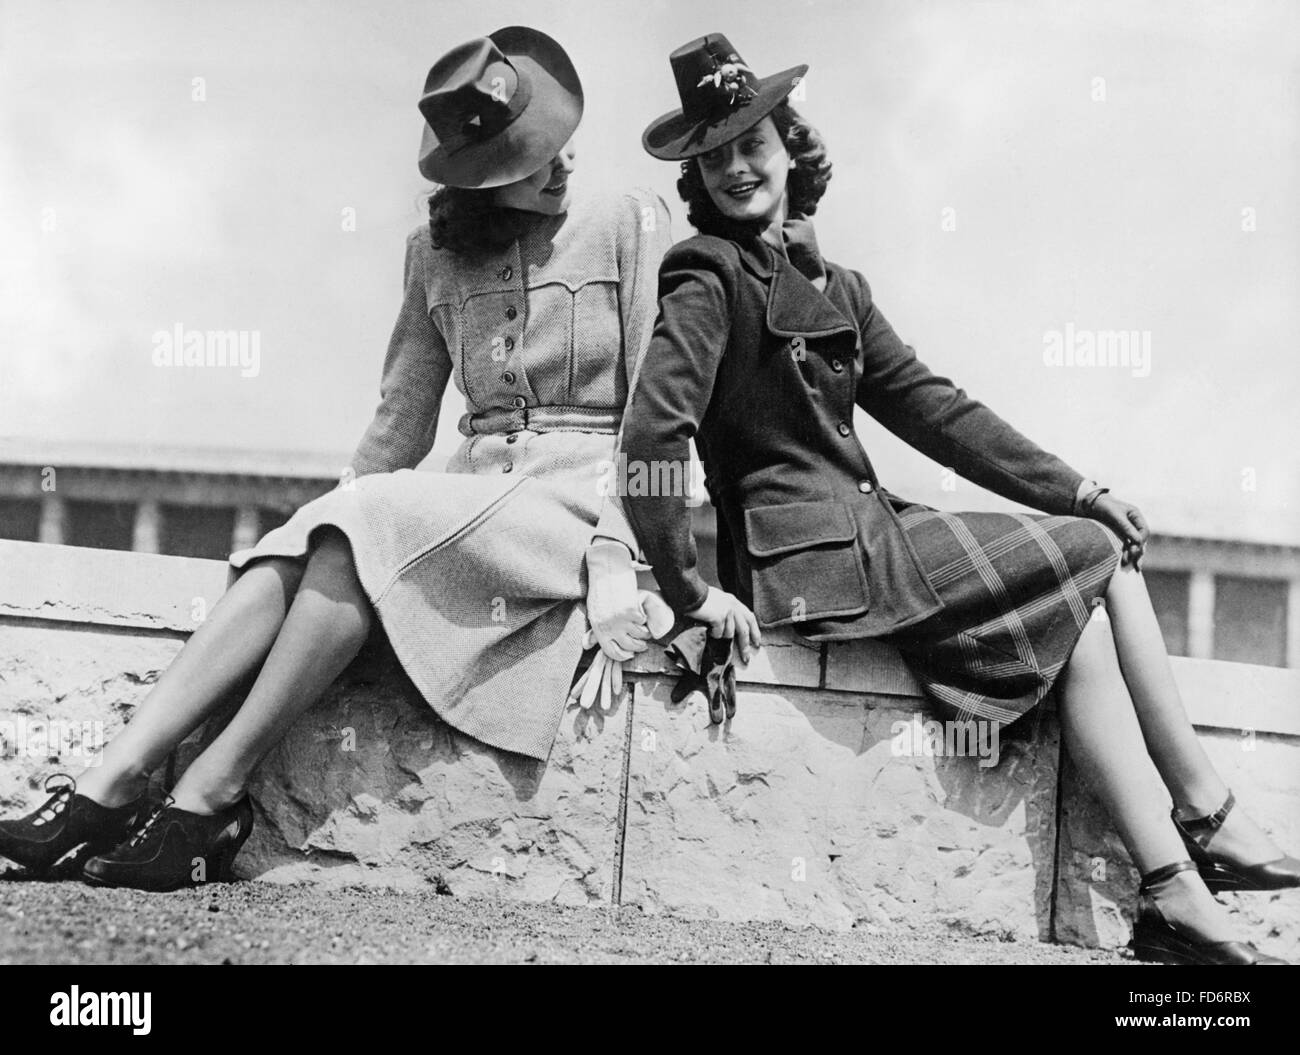 La moda femenina, 1940 de stock - Alamy